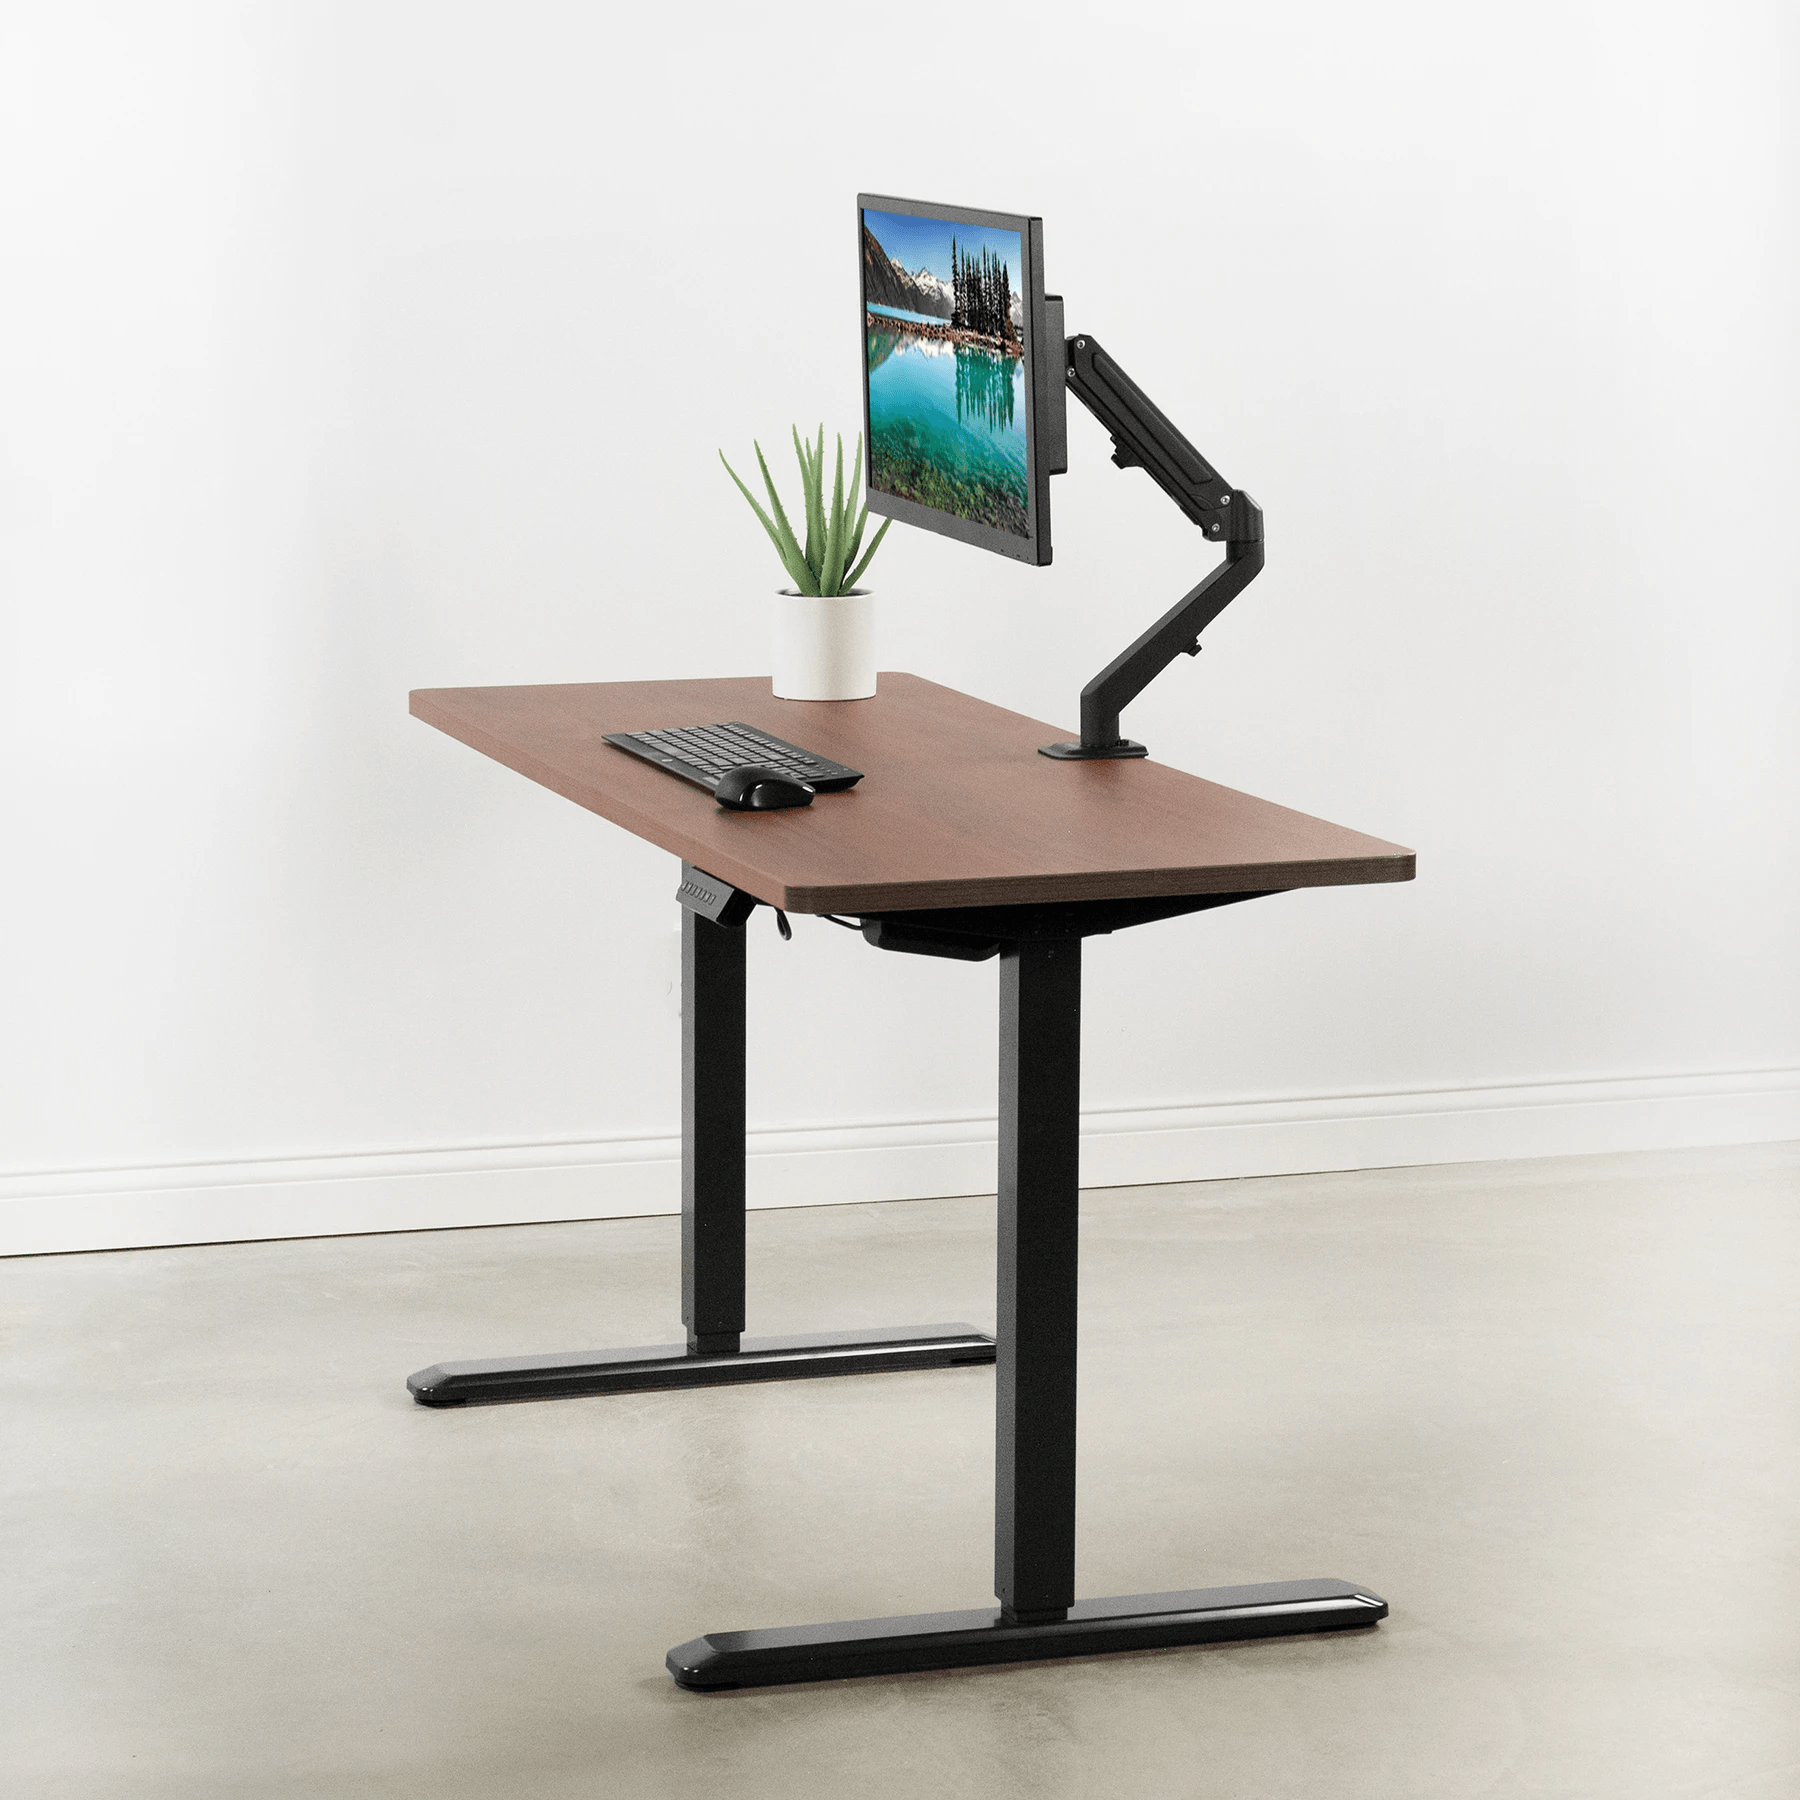 VIVO - Mesa/tablero universal de 1.52 mx 60 cm (60 x 24 in) para escritorio  de oficina y hogar con altura ajustable.